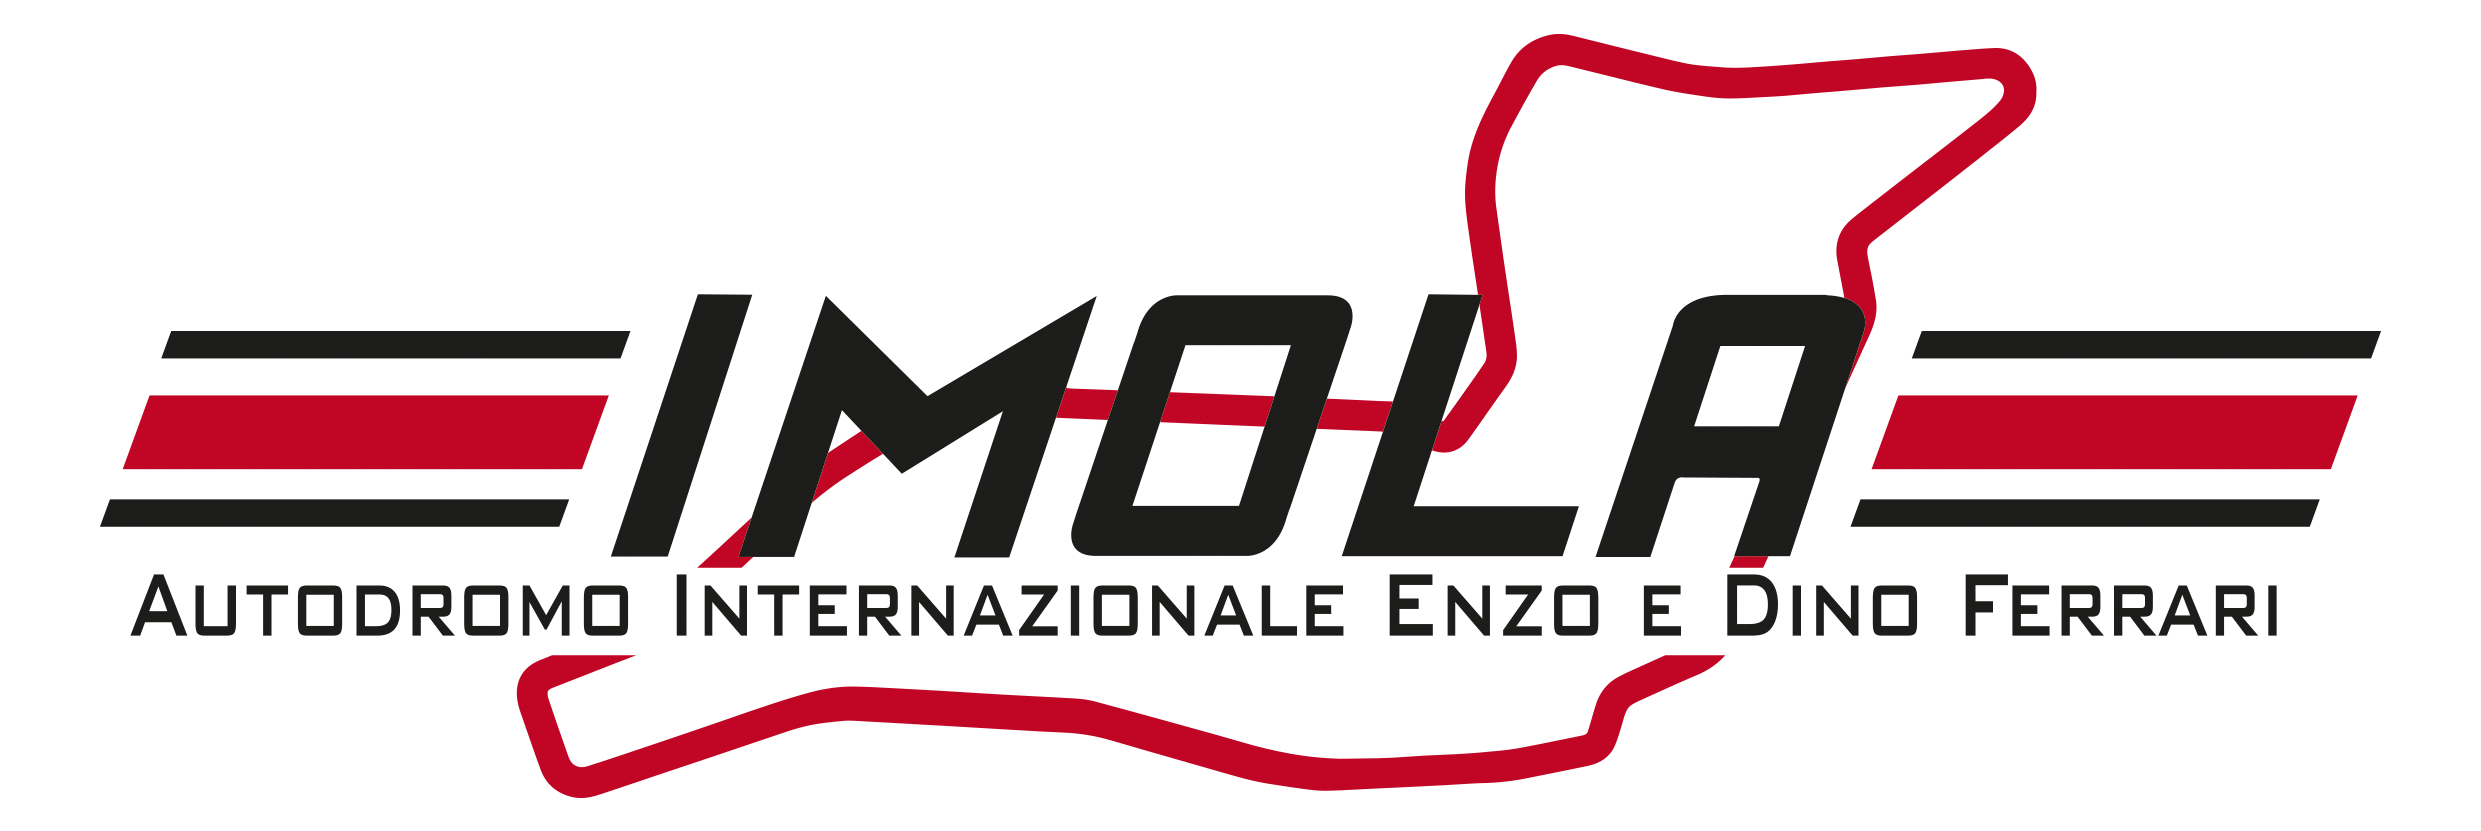 Motorsport Italia | Autodromo Internazionale Enzo e Dino Ferrari civ